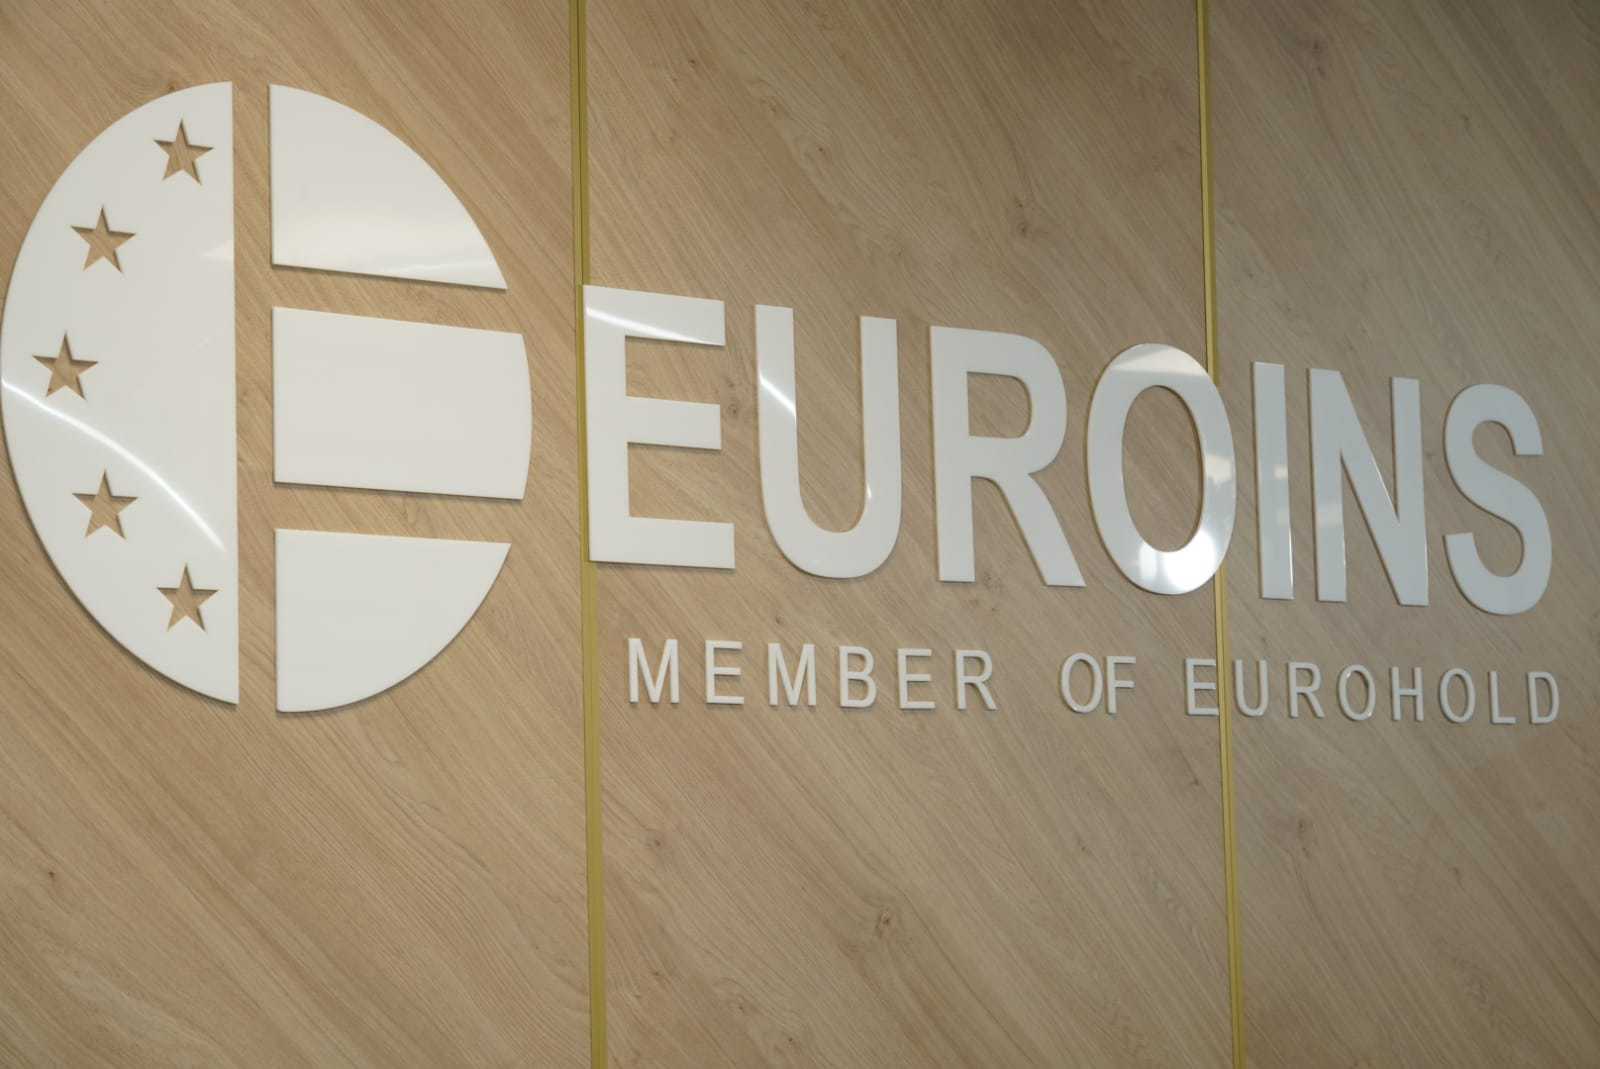 După falimentul City Insurance, Euroins şi-a dublat subscrierile totale în S1, la 1,52 mld. lei. Euroins estimează că până la finele lui 2022 va avea o cotă de piaţă pe RCA de sub 29%, de la 31,8% în S1, şi susţine că piaţa asigurărilor se stabilizează într-o distribuţie mai echilibrată pe RCA, Euroins deţinând o „poziţie stabilă“